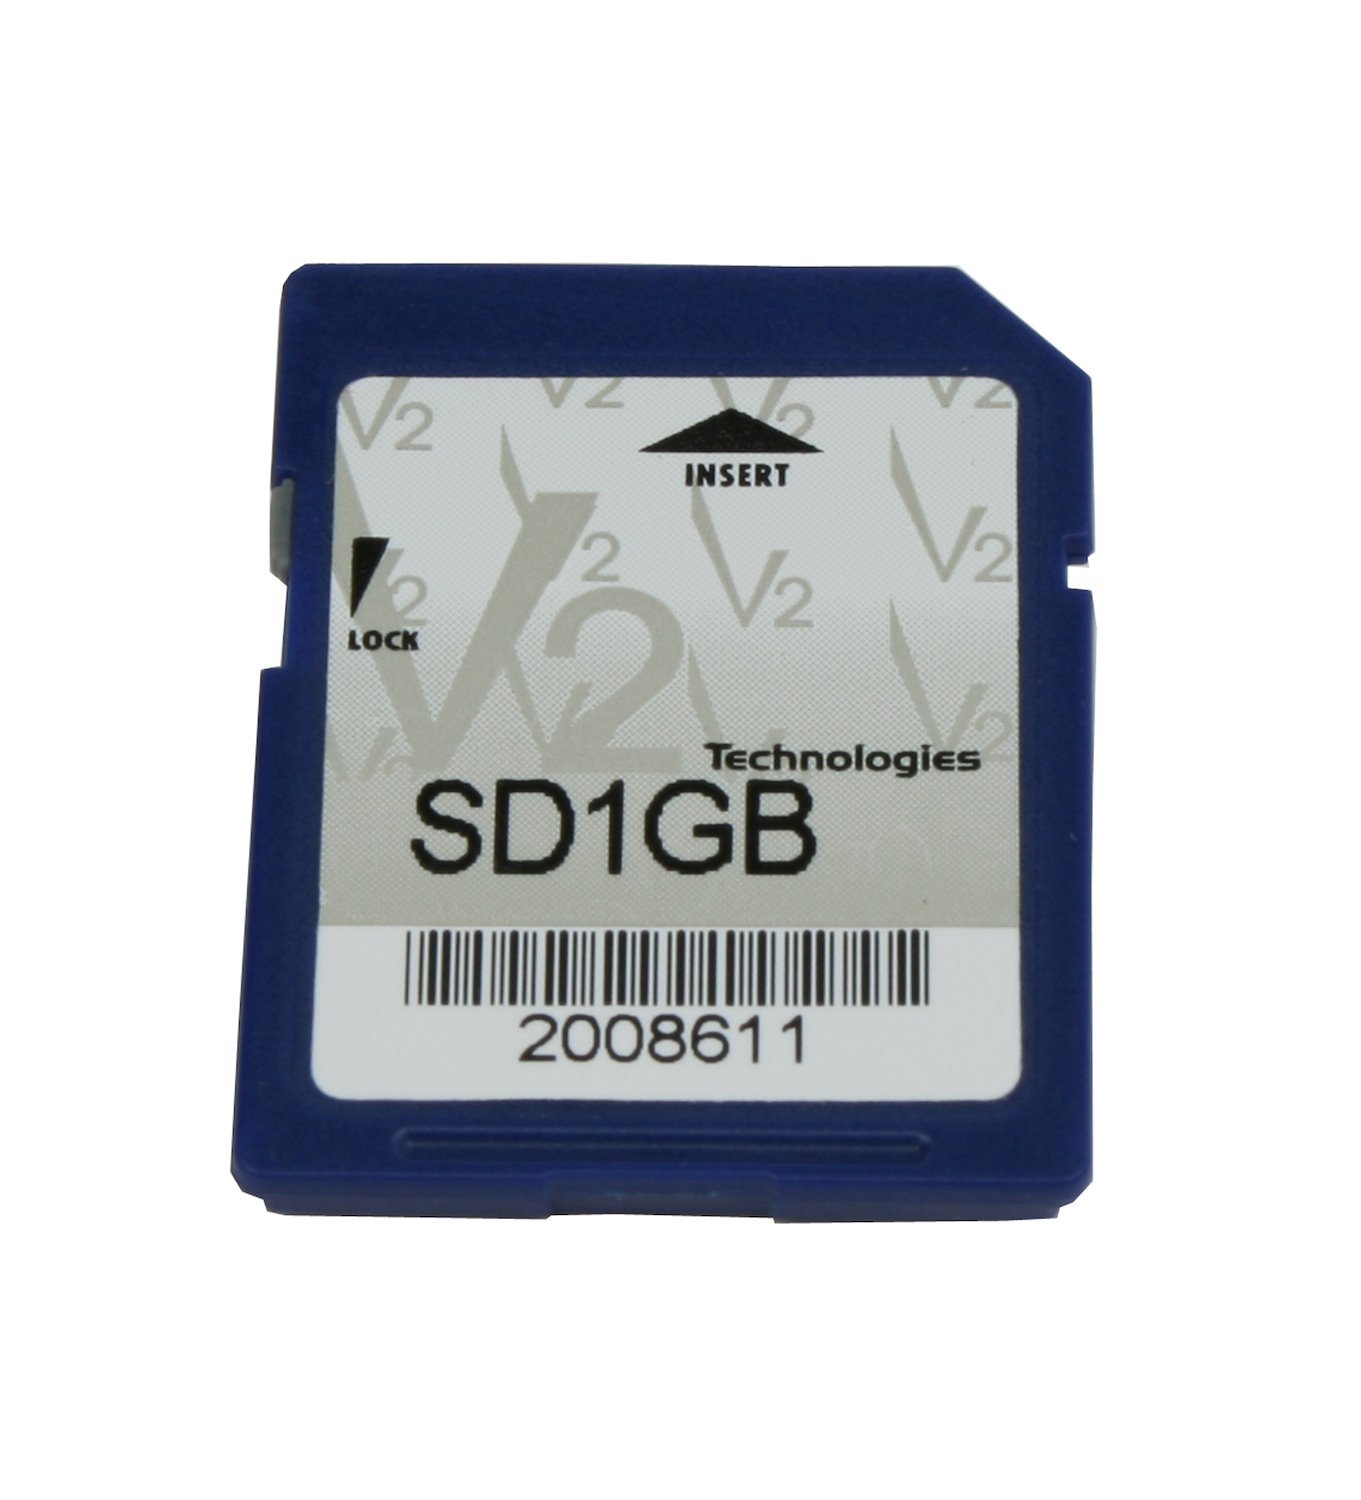 2 GB SD CARD